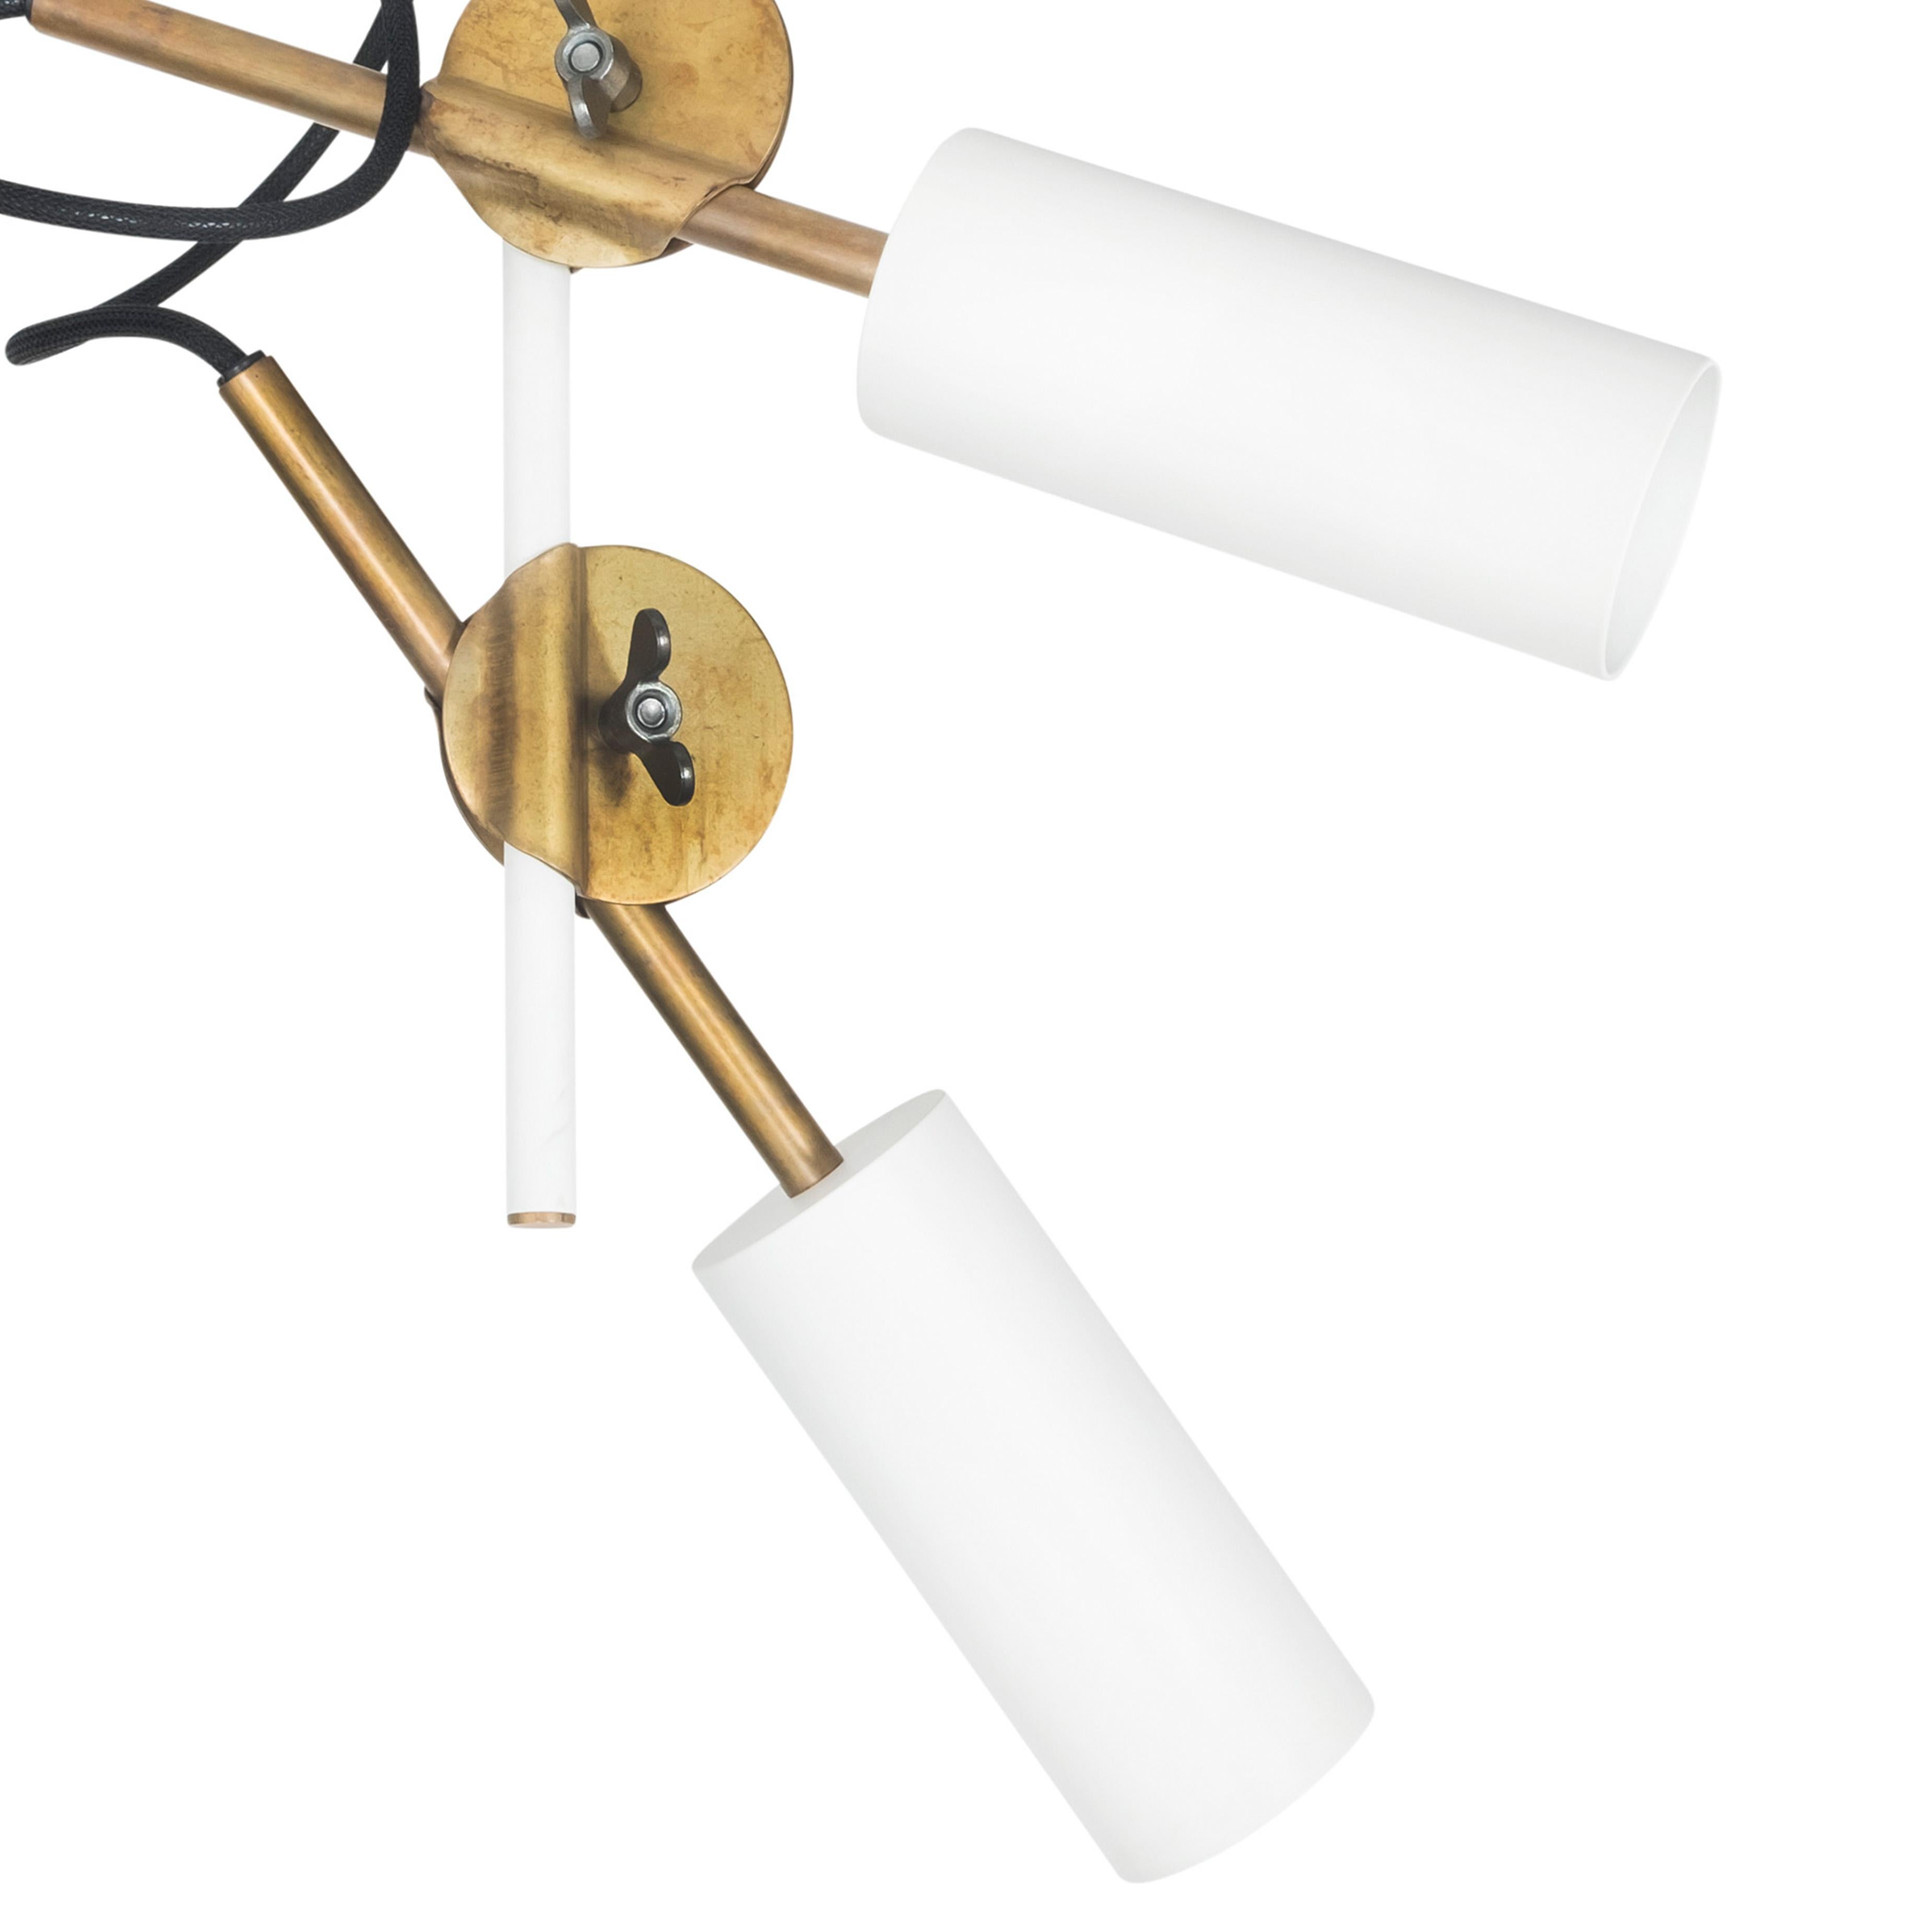 Johan Carpner 3452-4 STAV SPOT 2 Brass Ceiling Lamp by Konsthantverk  In New Condition For Sale In Barcelona, Barcelona